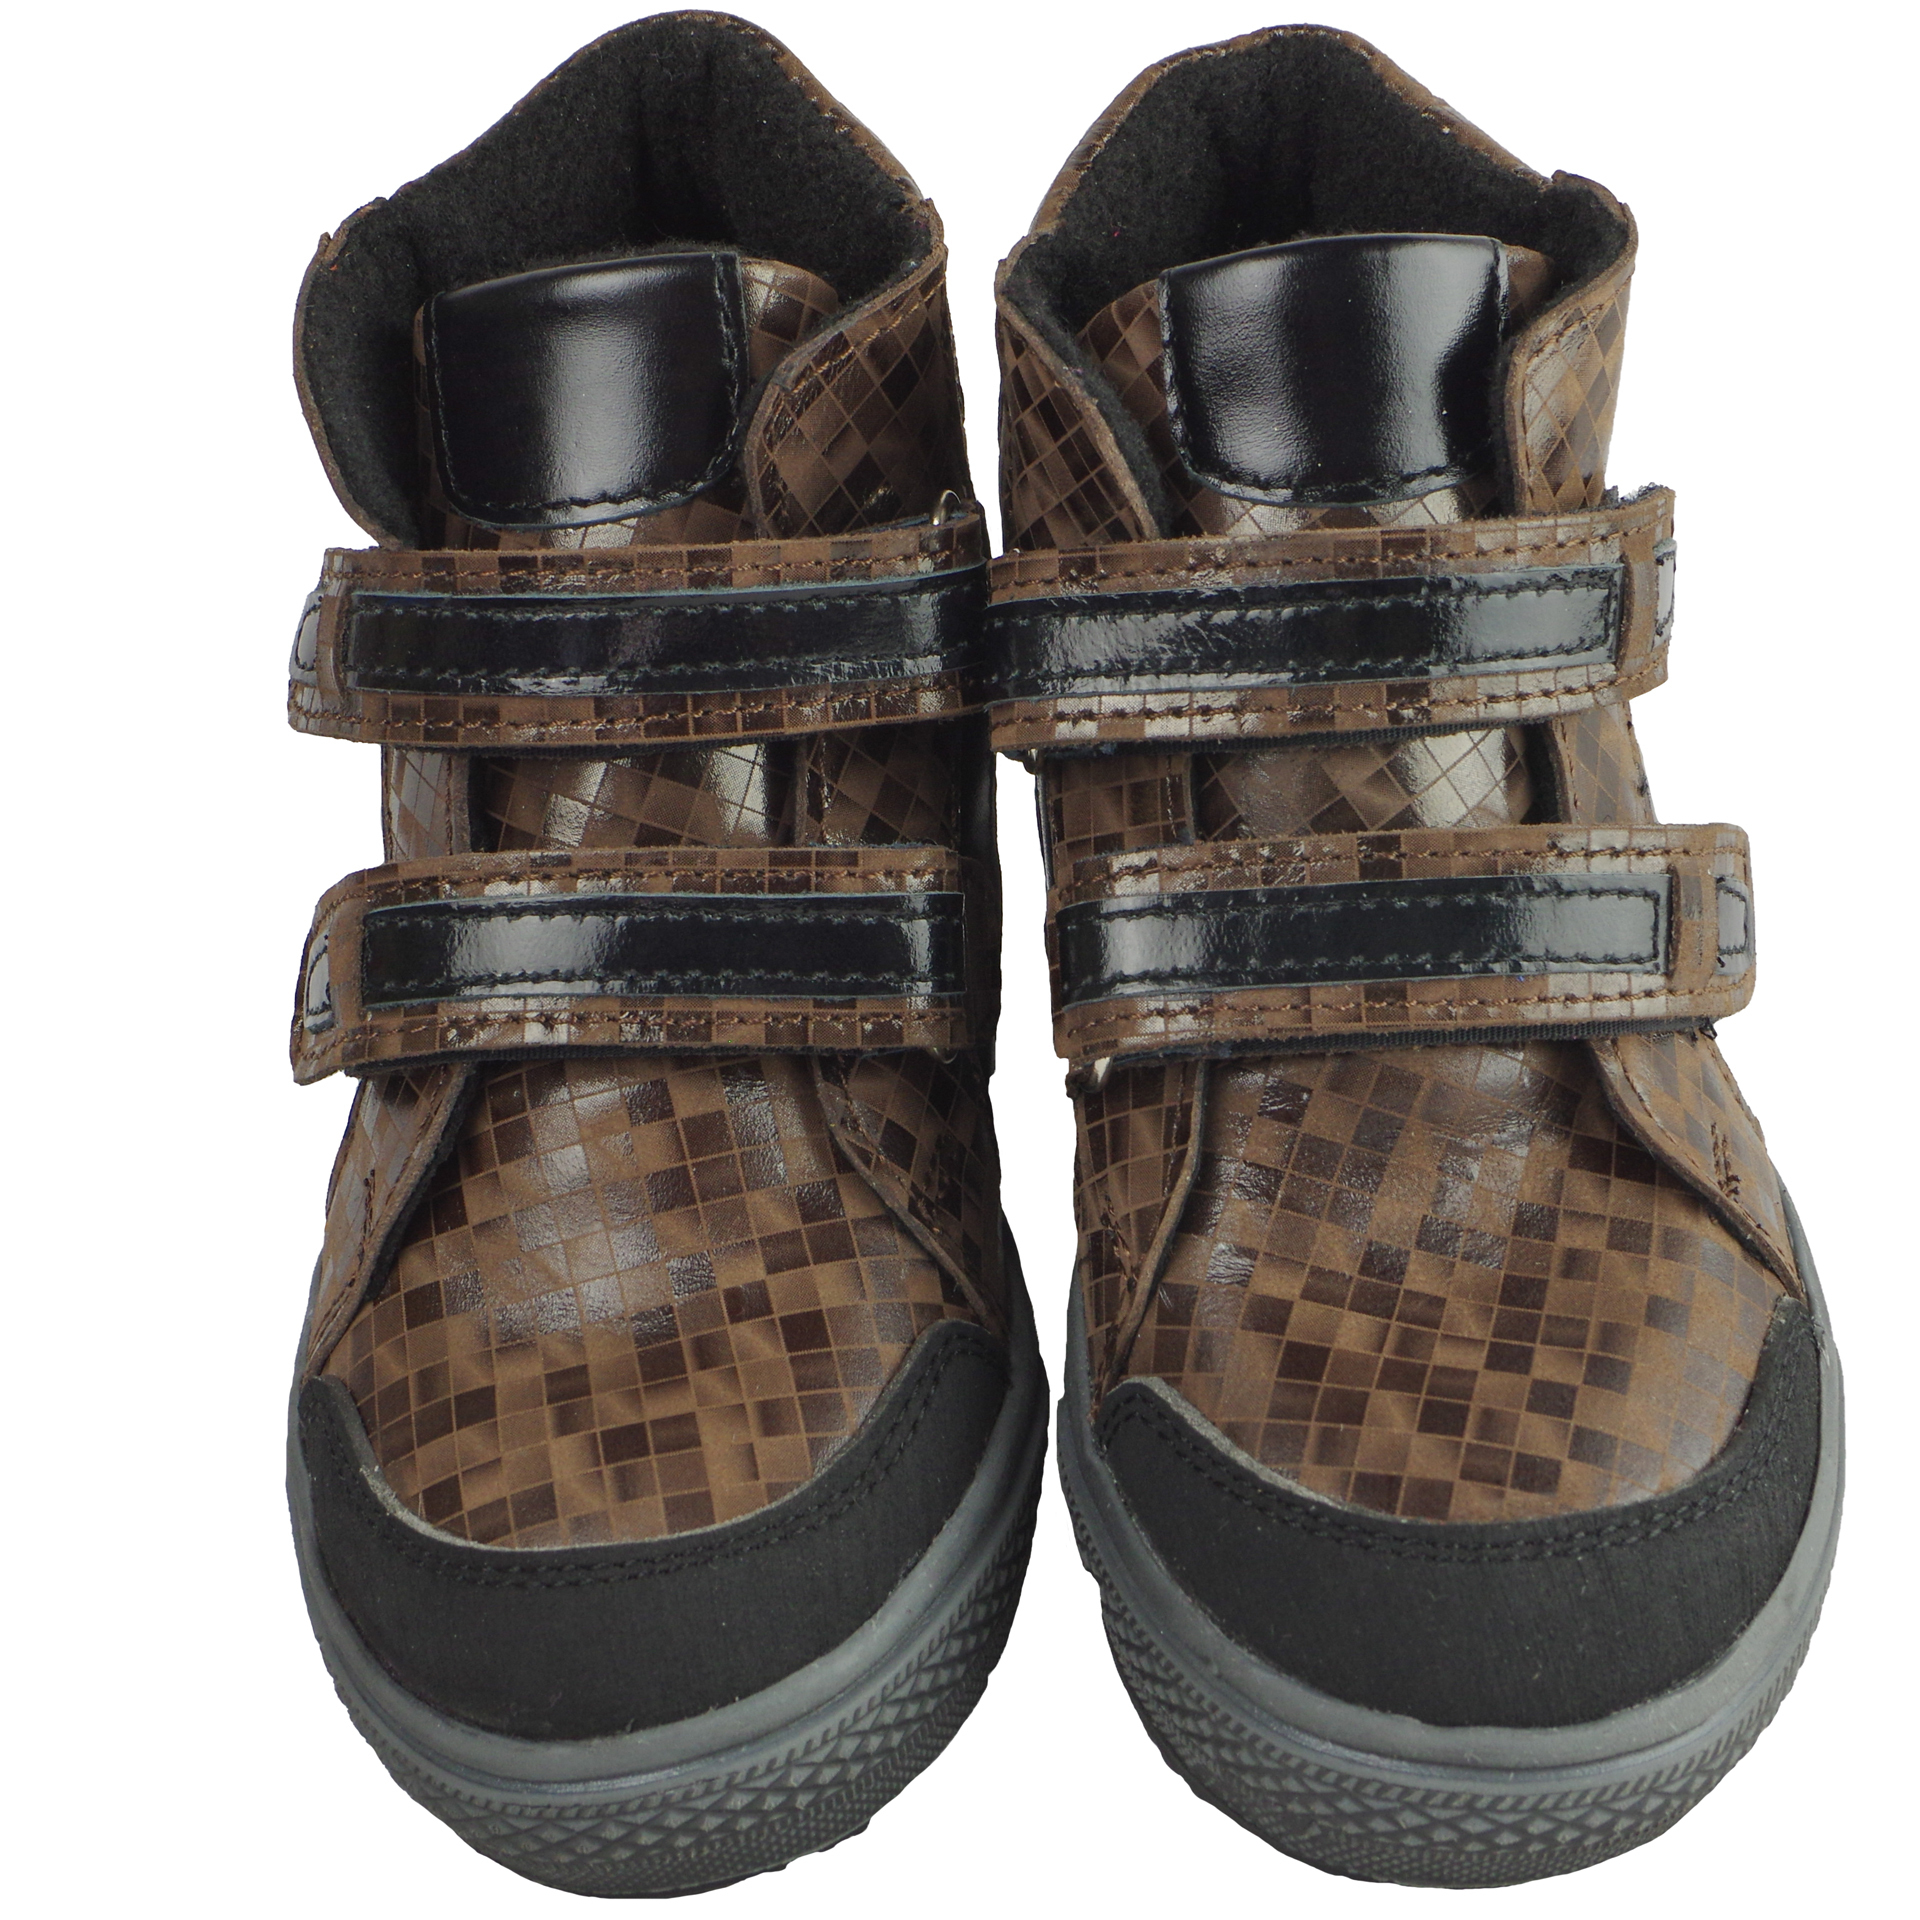 Демисезонные ботинки детские (2073) материал Натуральная кожа, цвет Коричневый  для девочки 26-30 размеры – Sole Kids. Фото 3